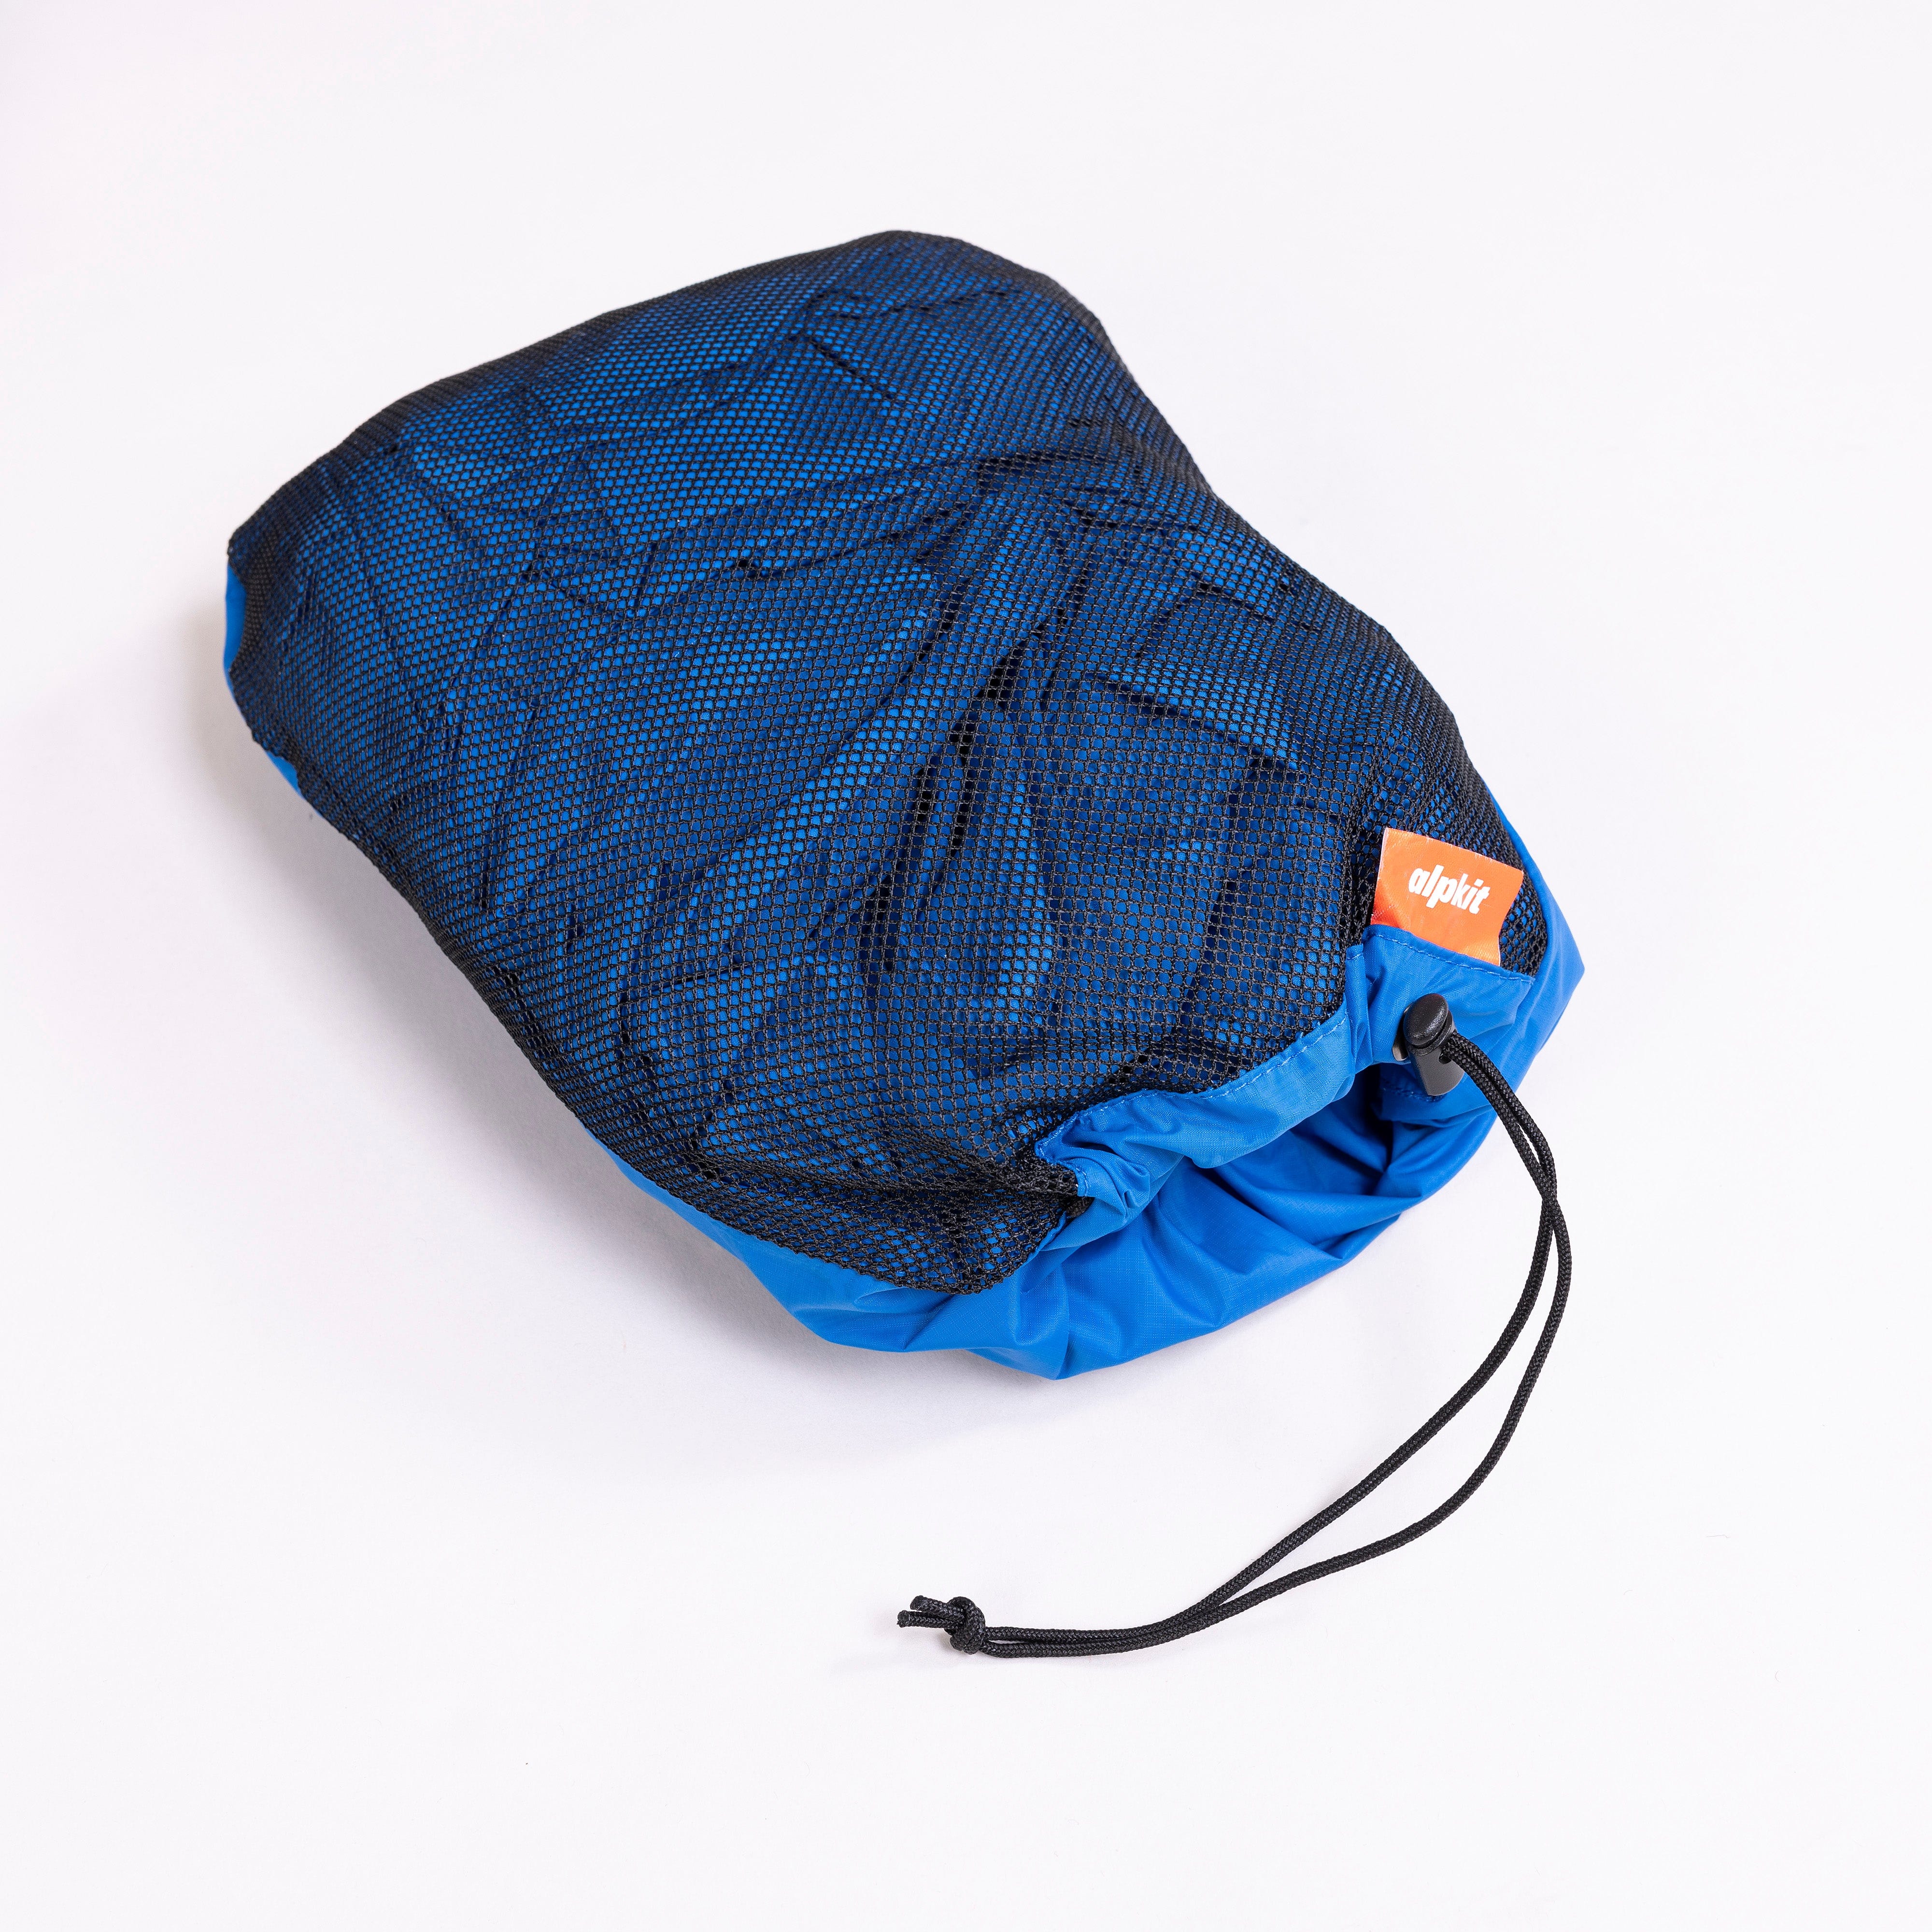 Hunka XL | Breathable Waterproof Bivvy Bag